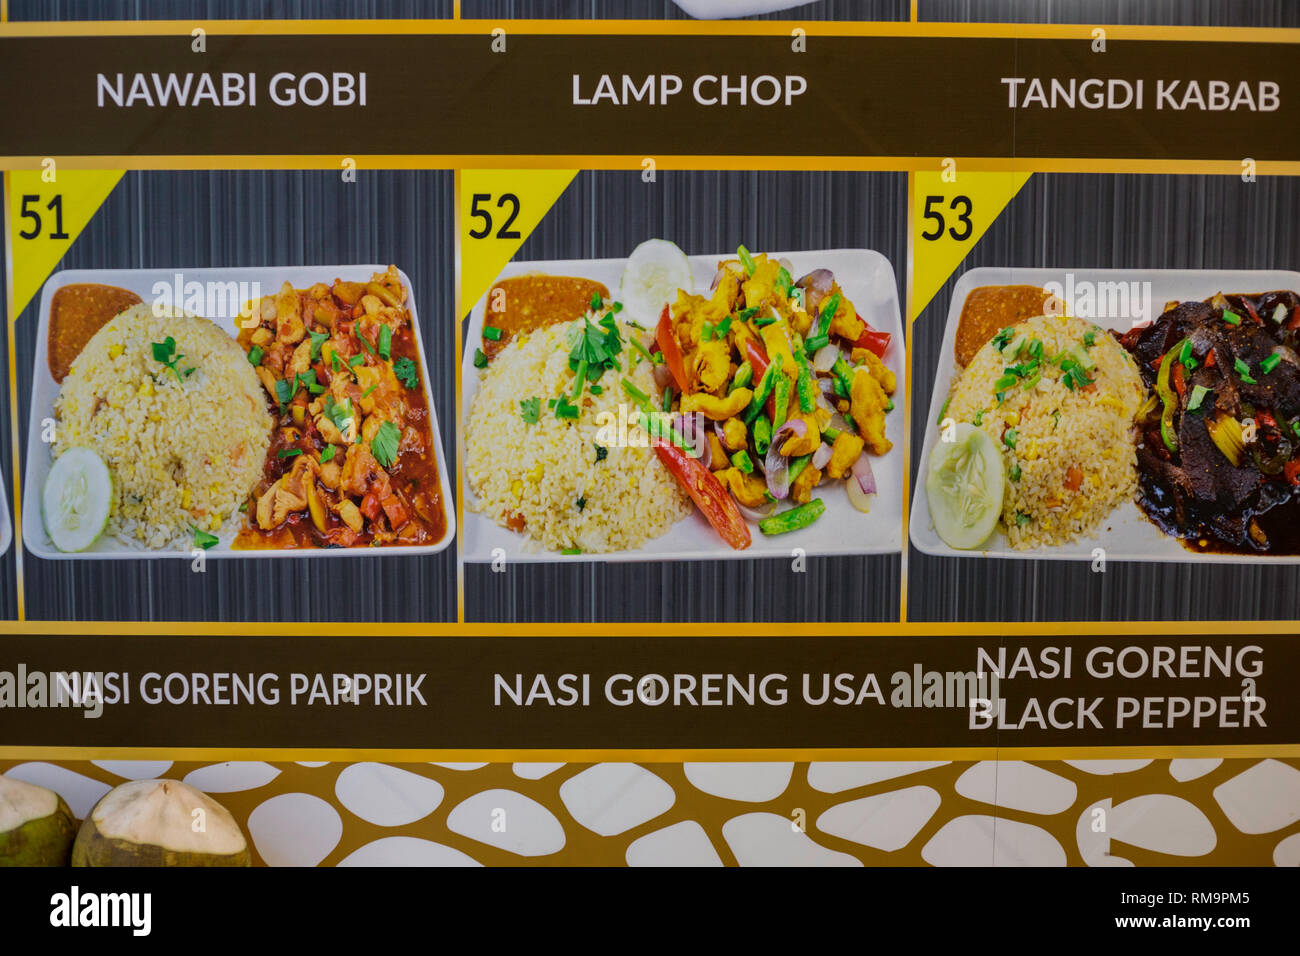 Il menu del ristorante che offre il Nasi Goreng USA, Stir-fried rice meno speziato rispetto al solito. Singapore. Foto Stock